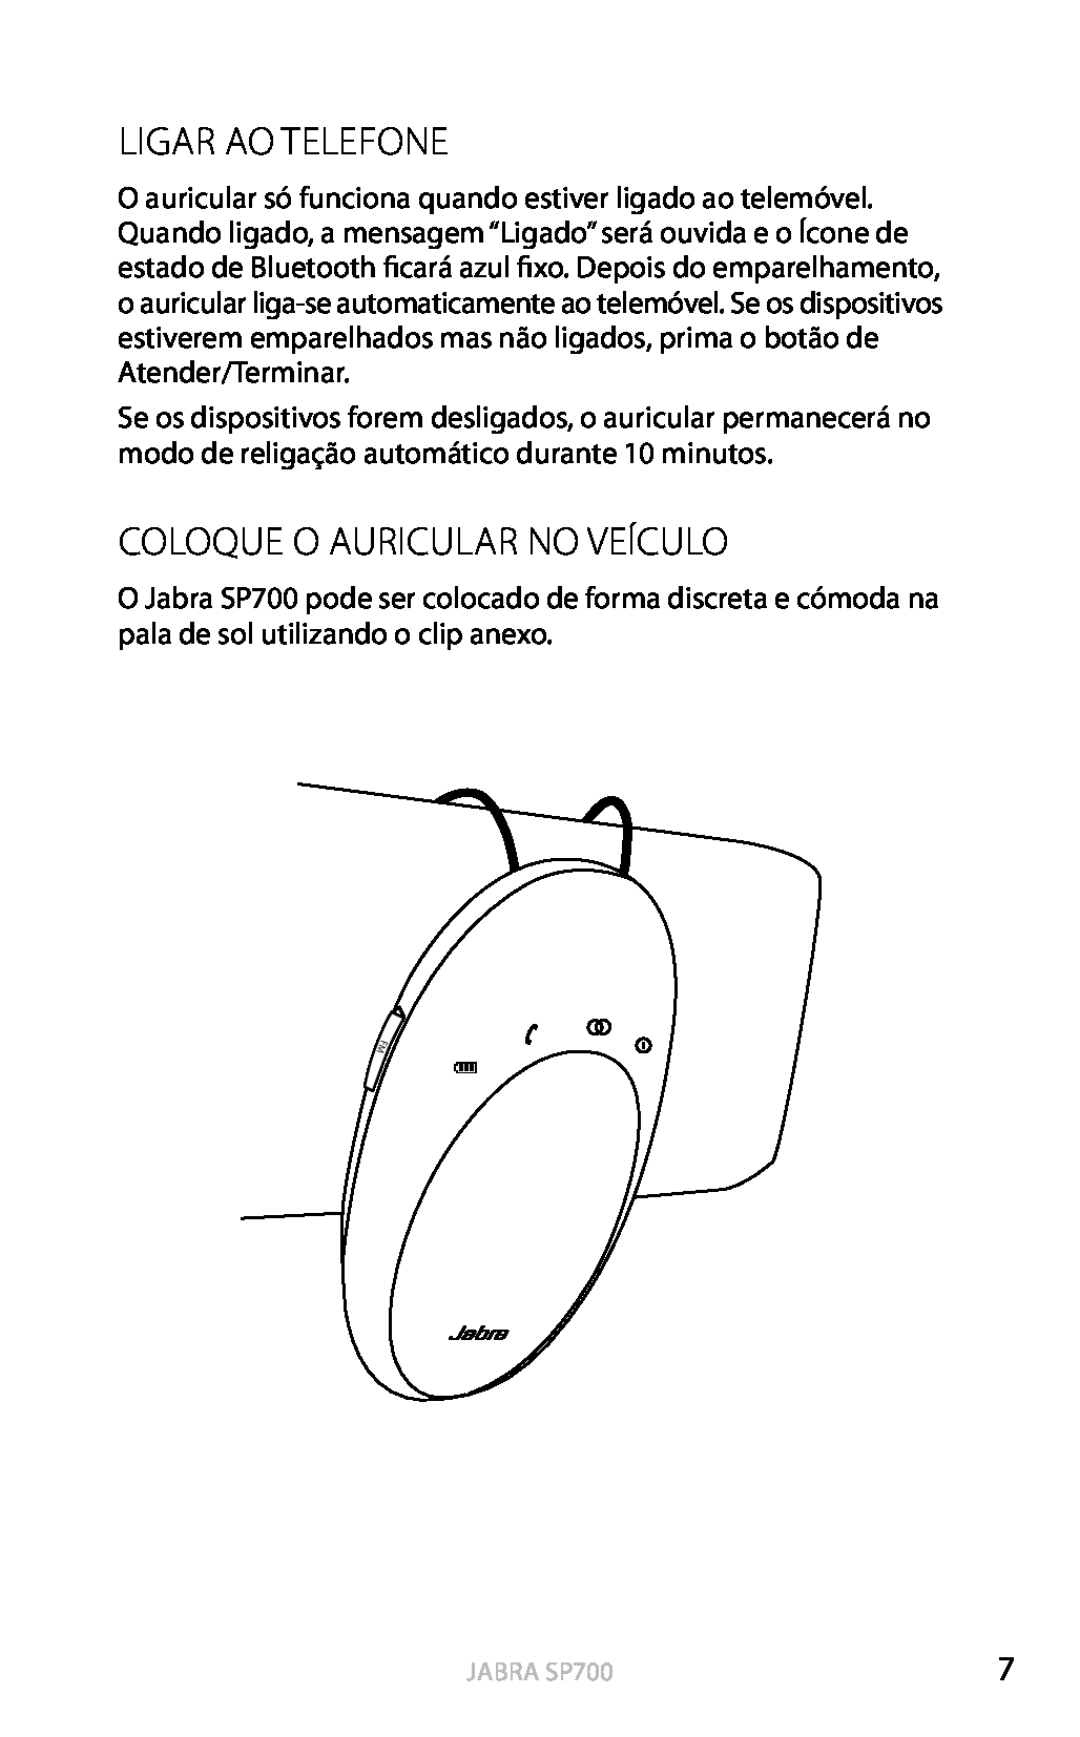 Jabra SP700 user manual Ligar Ao Telefone, Coloque O Auricular No Veículo, Português 